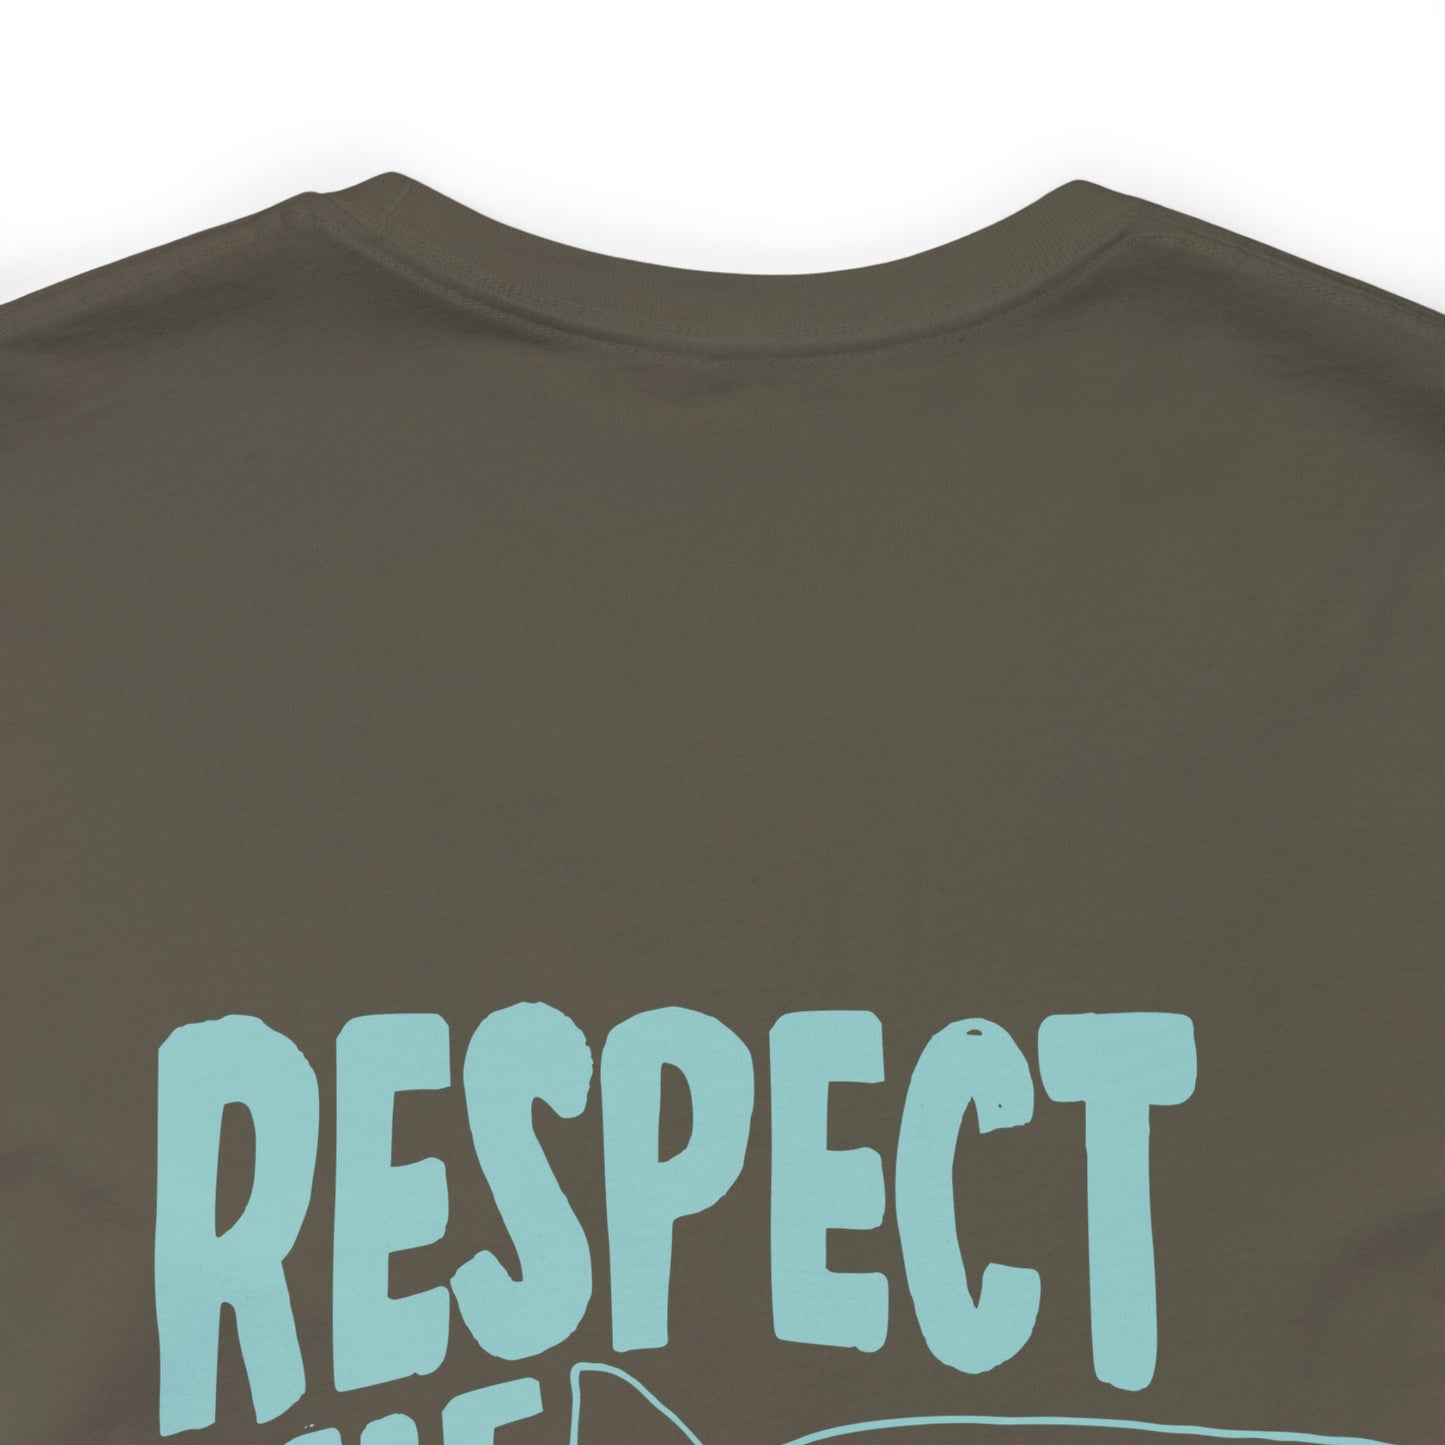 Men’s respect the locals shark shirt